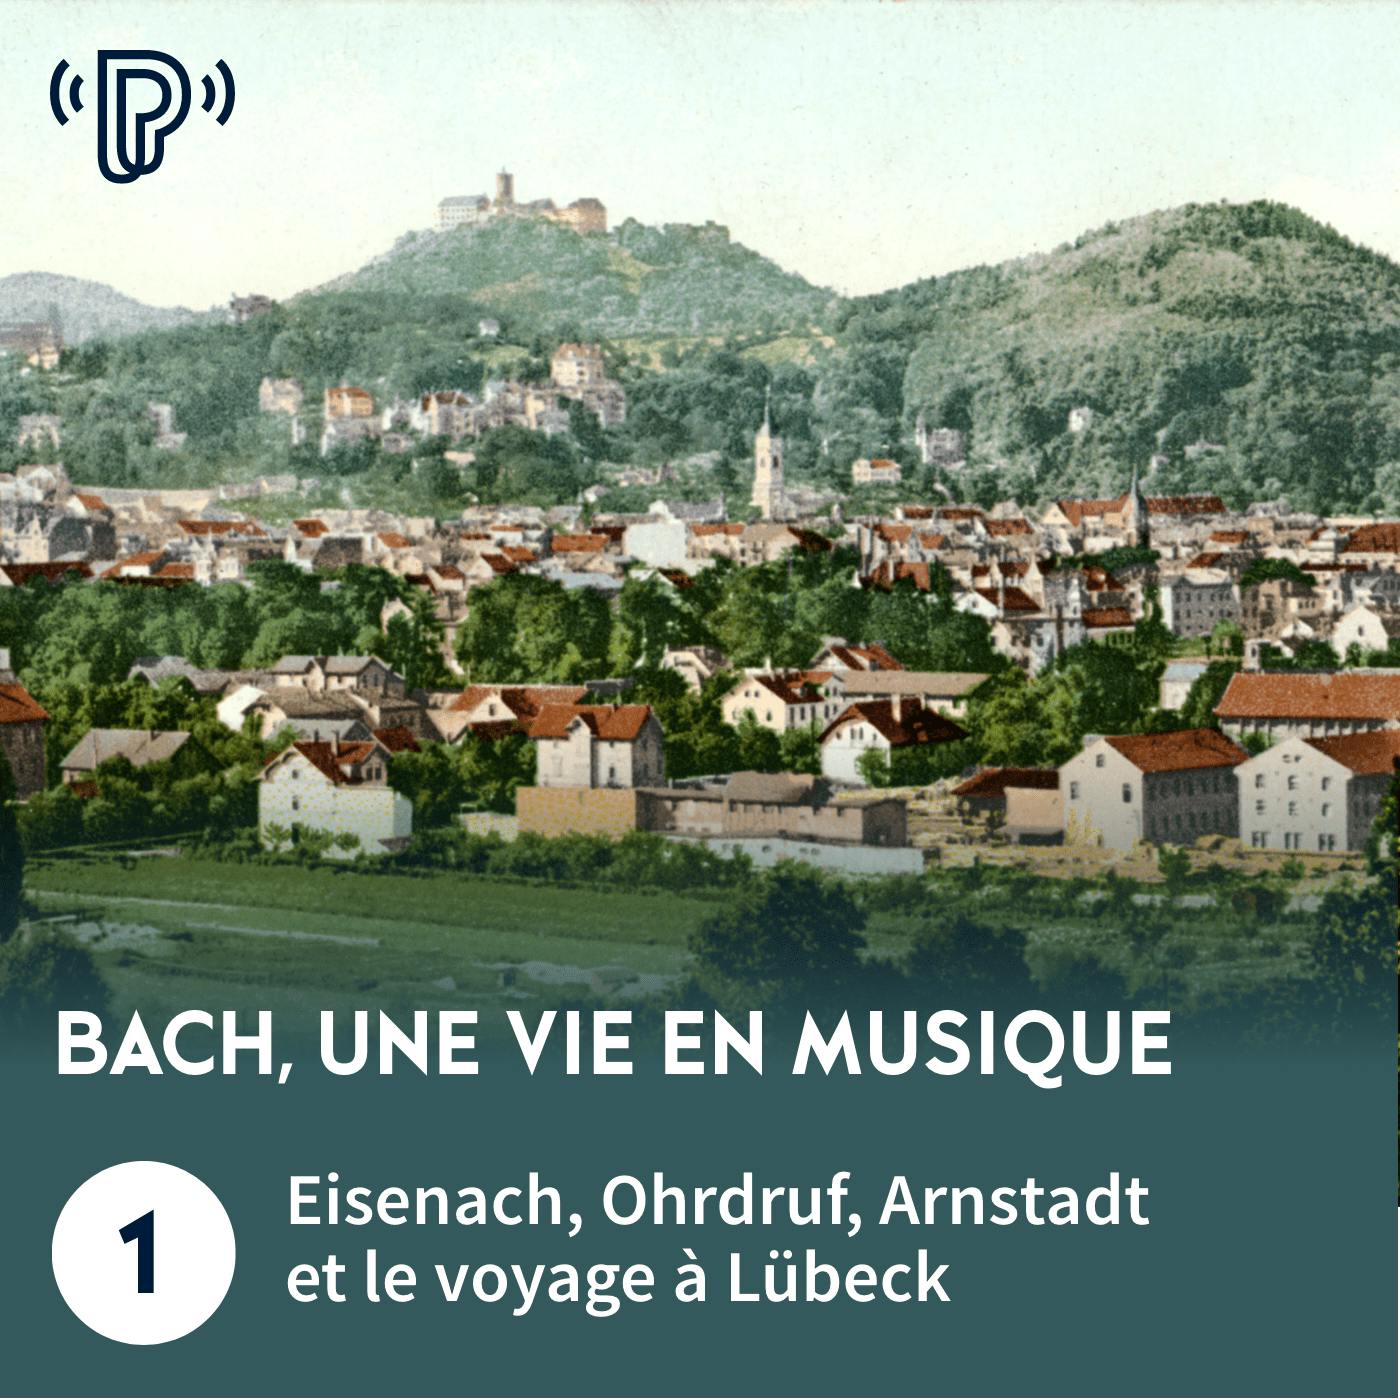 Bach, une vie en musique #1 - Eisenach, Ohrdruf, Arnstadt et le voyage à Lübeck